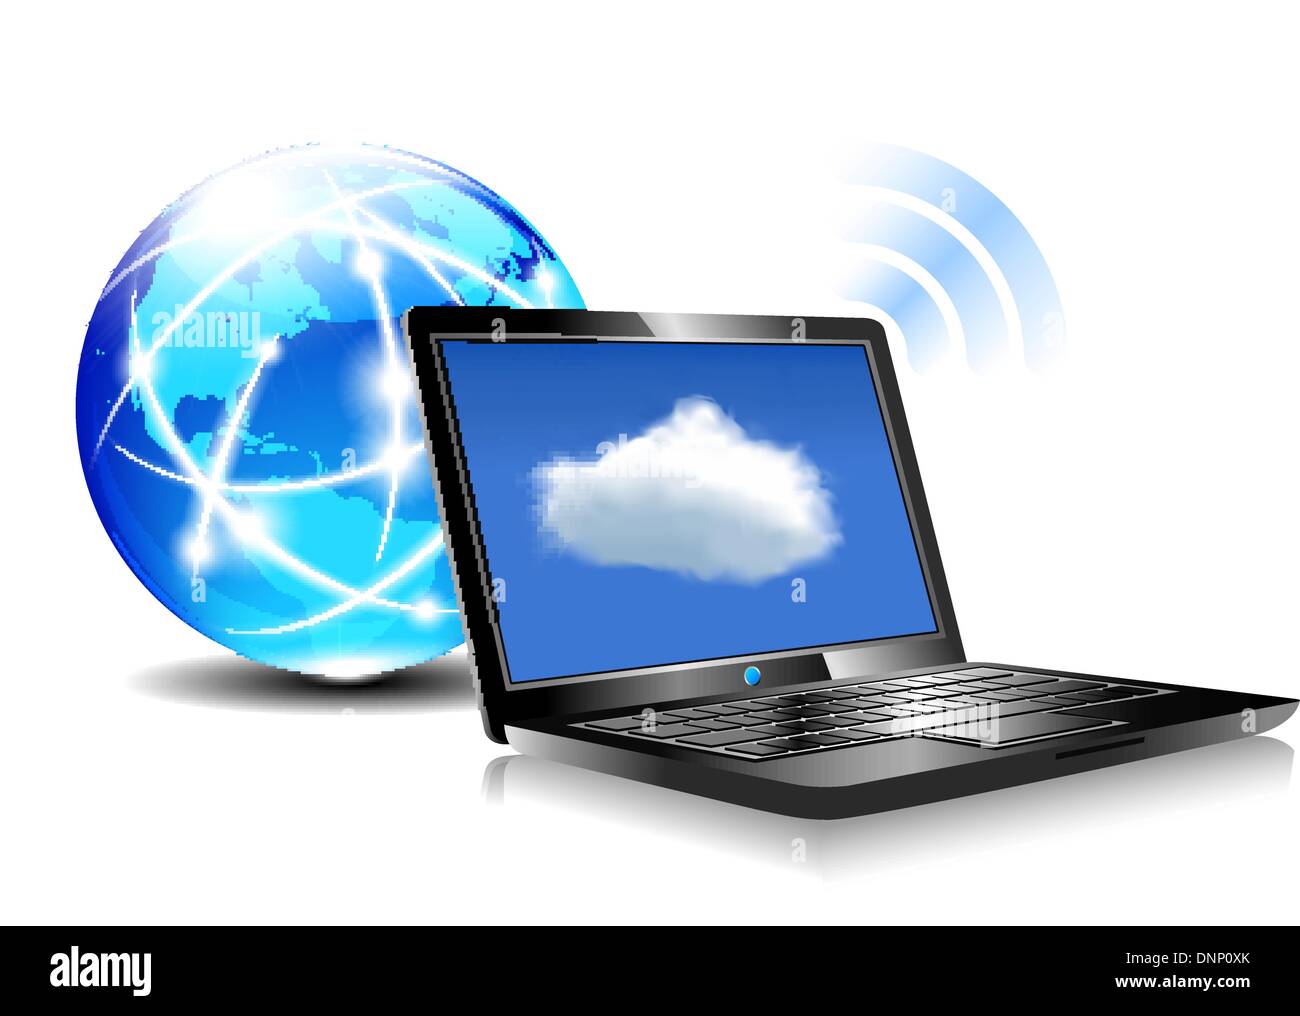 La communication avec l'ordinateur client ressources situées dans le 'cloud' monde virtuel portable icône Illustration de Vecteur